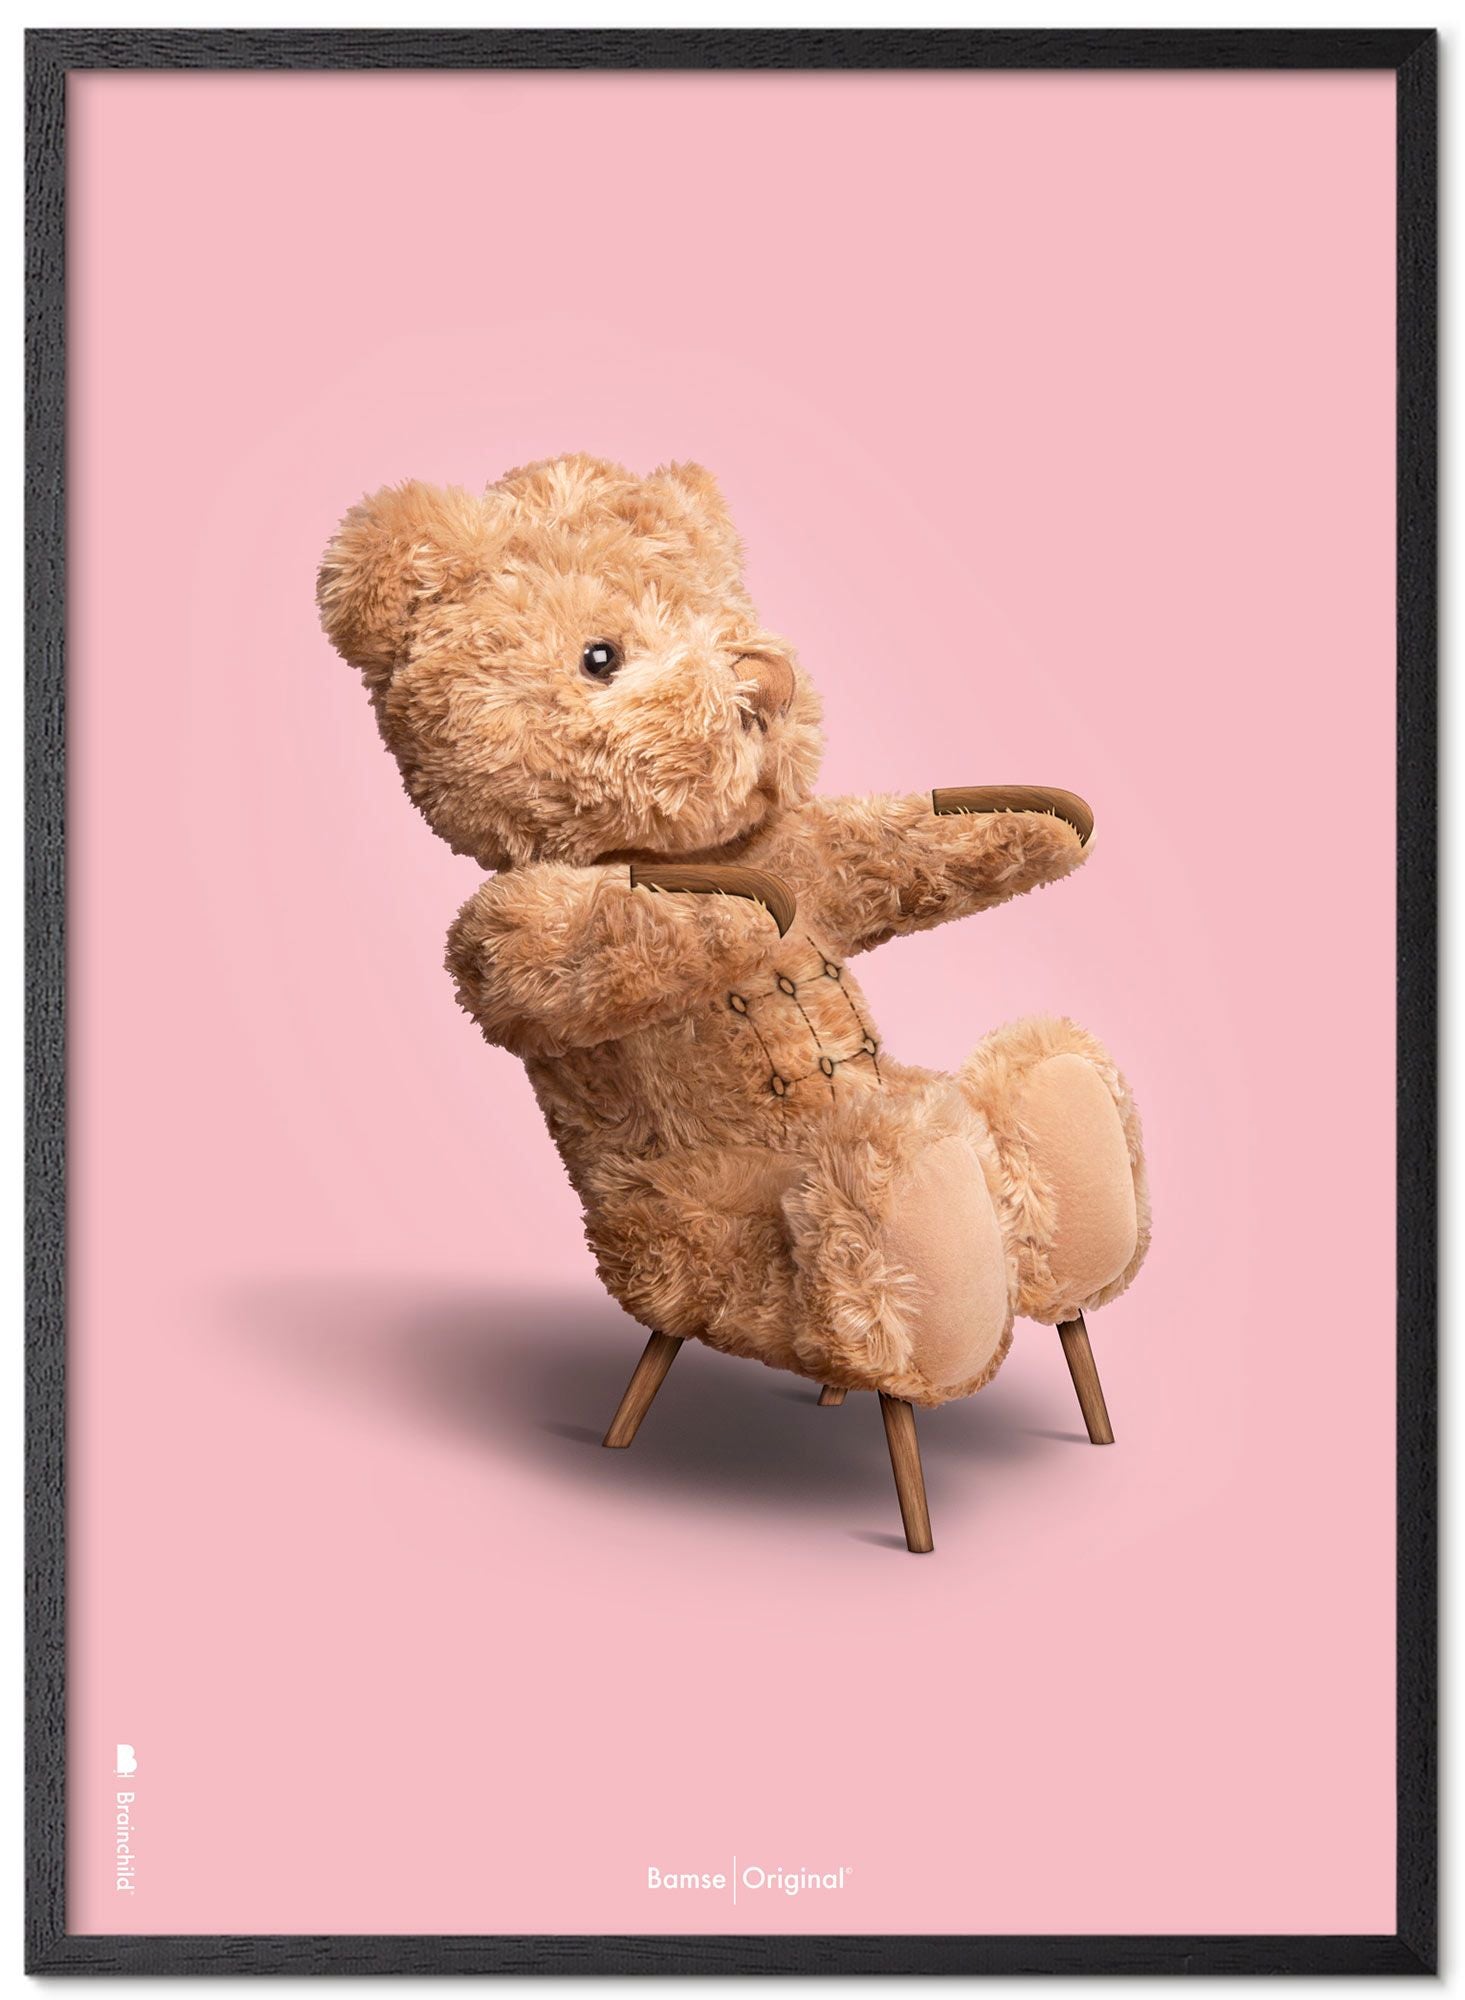 Marco de póster clásico de oso de peluche de creación hecha de madera lacada negra 30x40 cm, fondo rosa